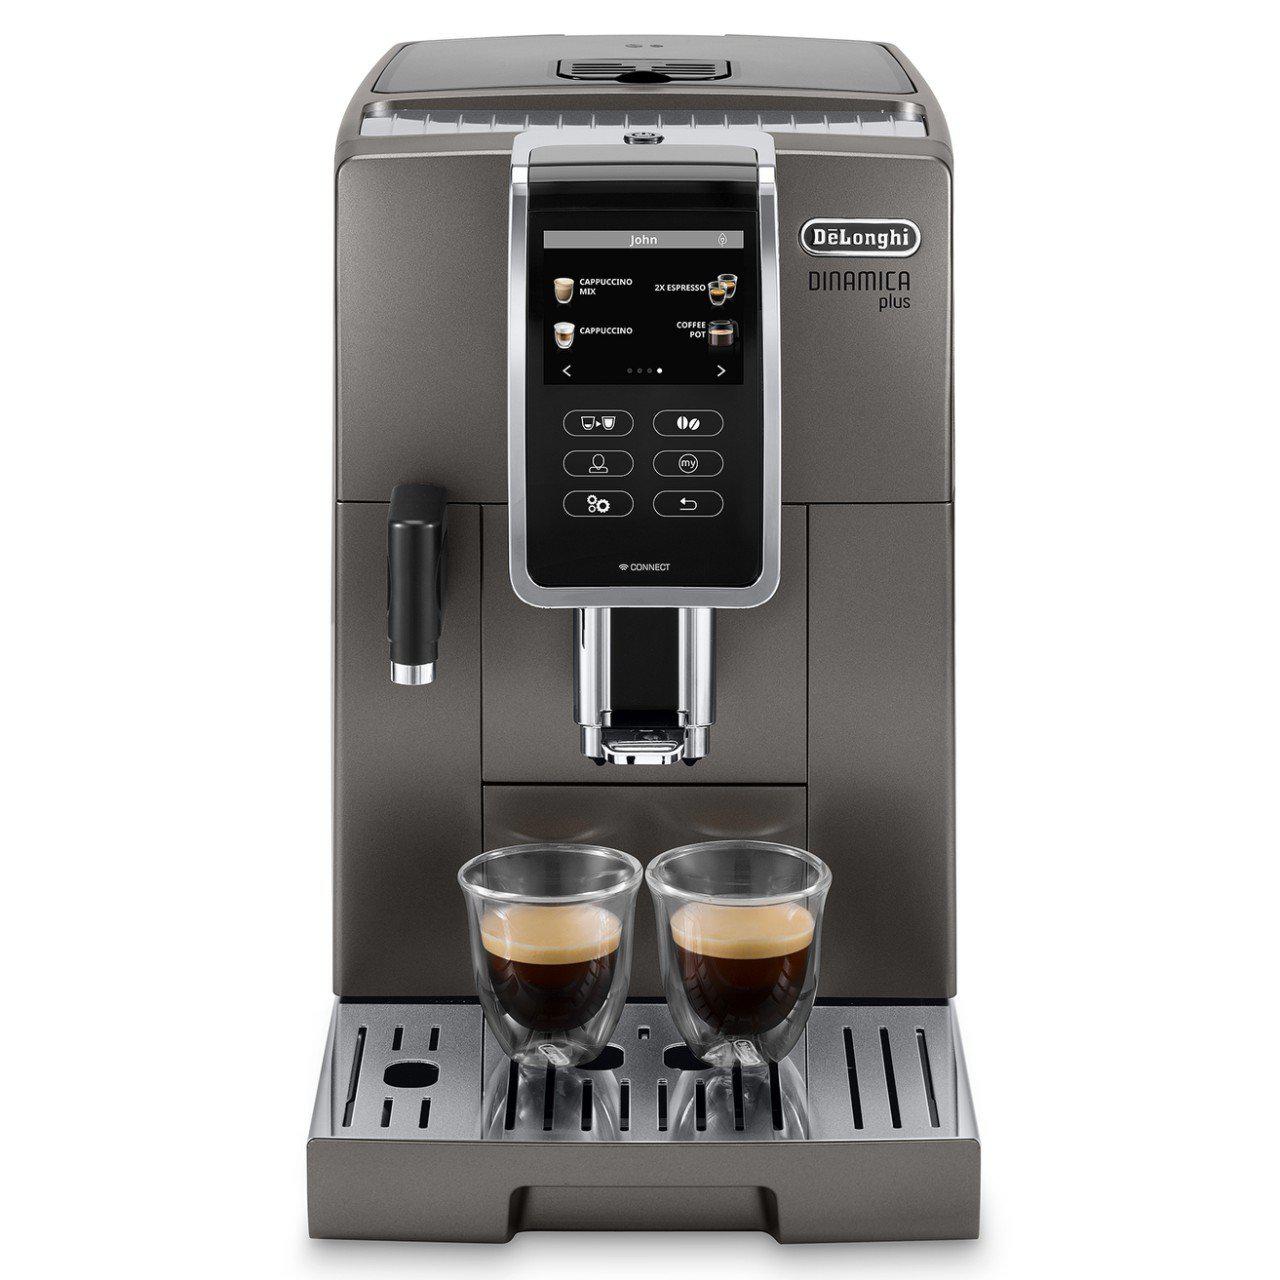 Delonghi Dinamica Plus ECAM37095TI Super Automatic Coffee Machine